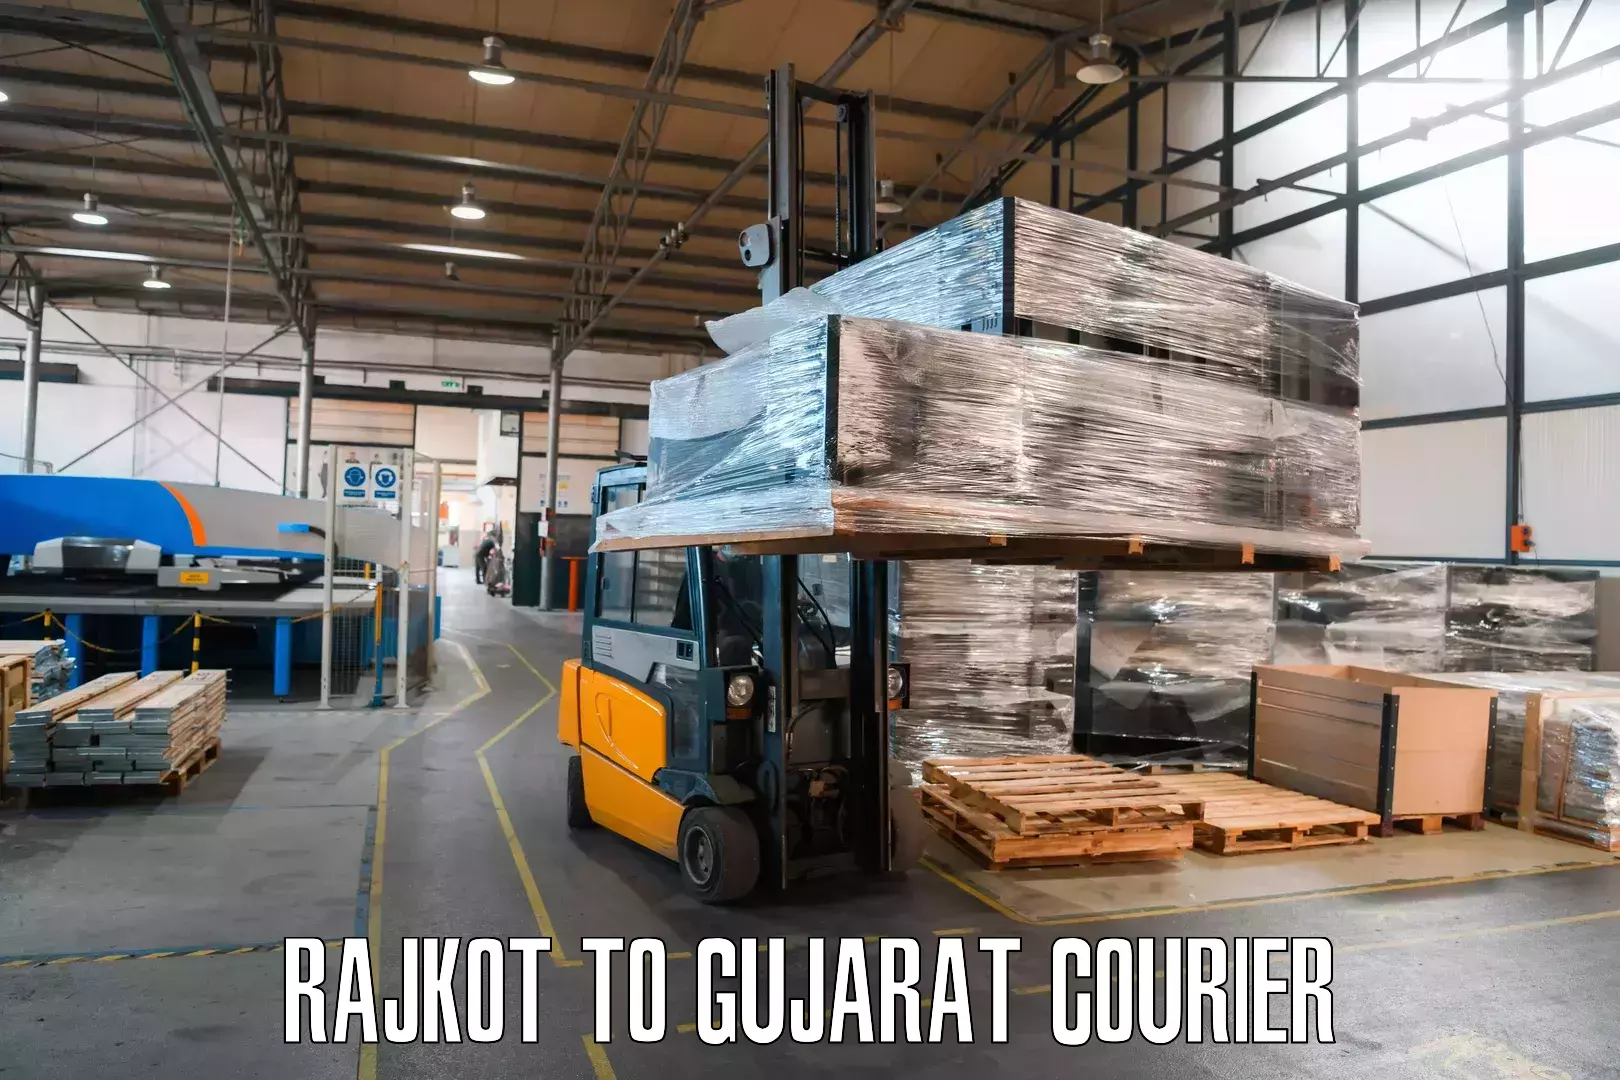 24-hour courier service Rajkot to Modasa